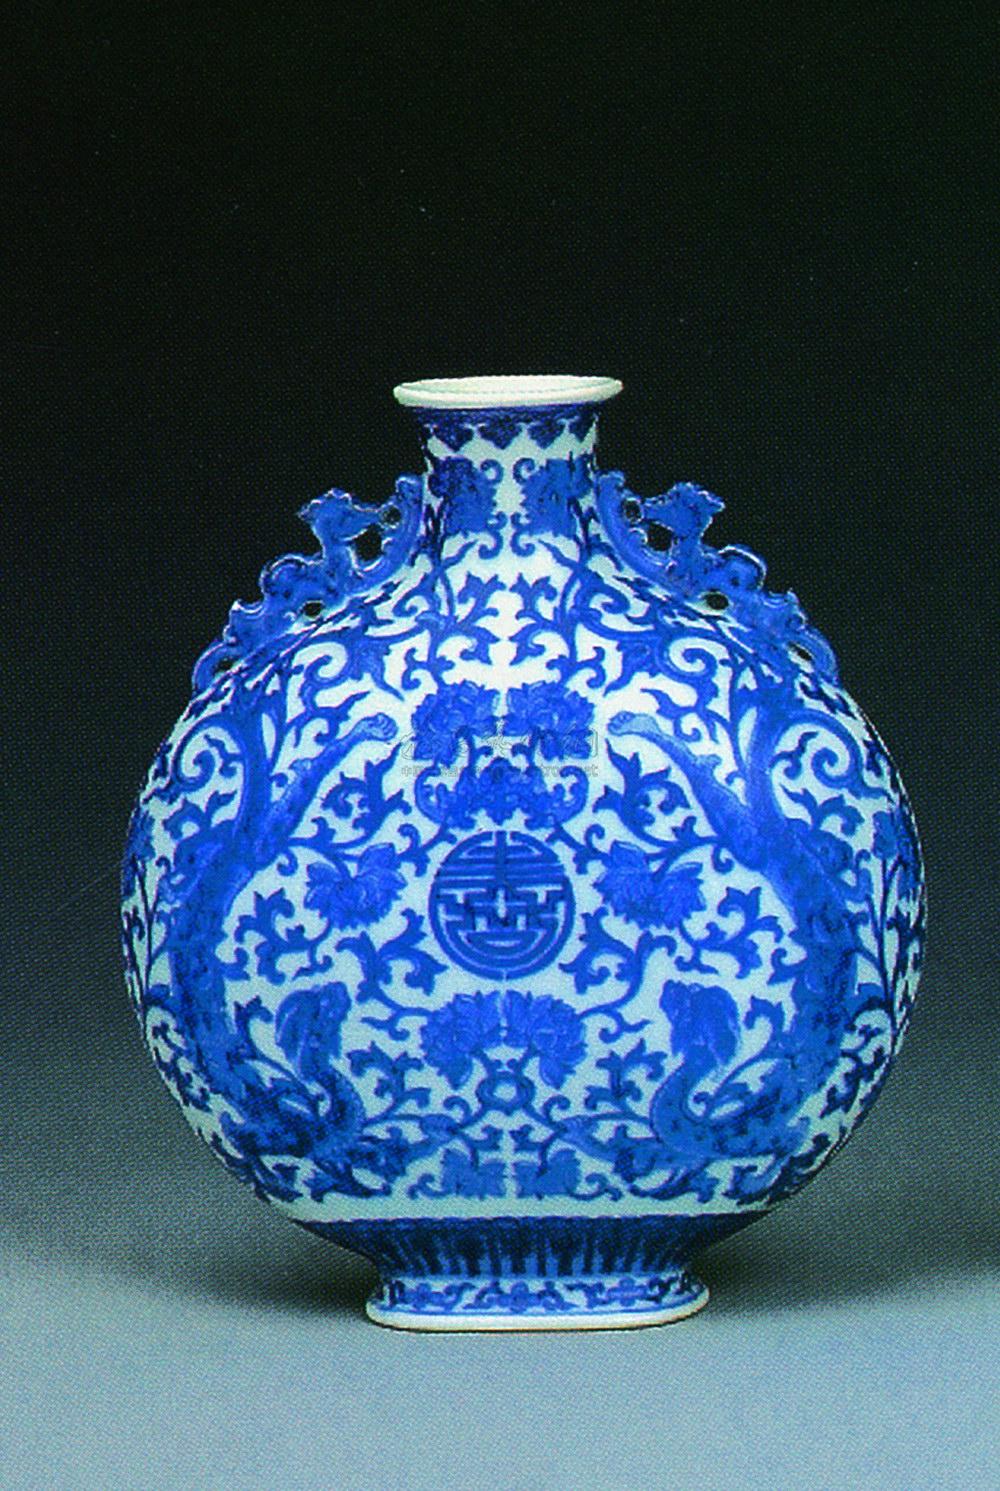 是中国瓷器的主流品种之一,属釉下彩瓷